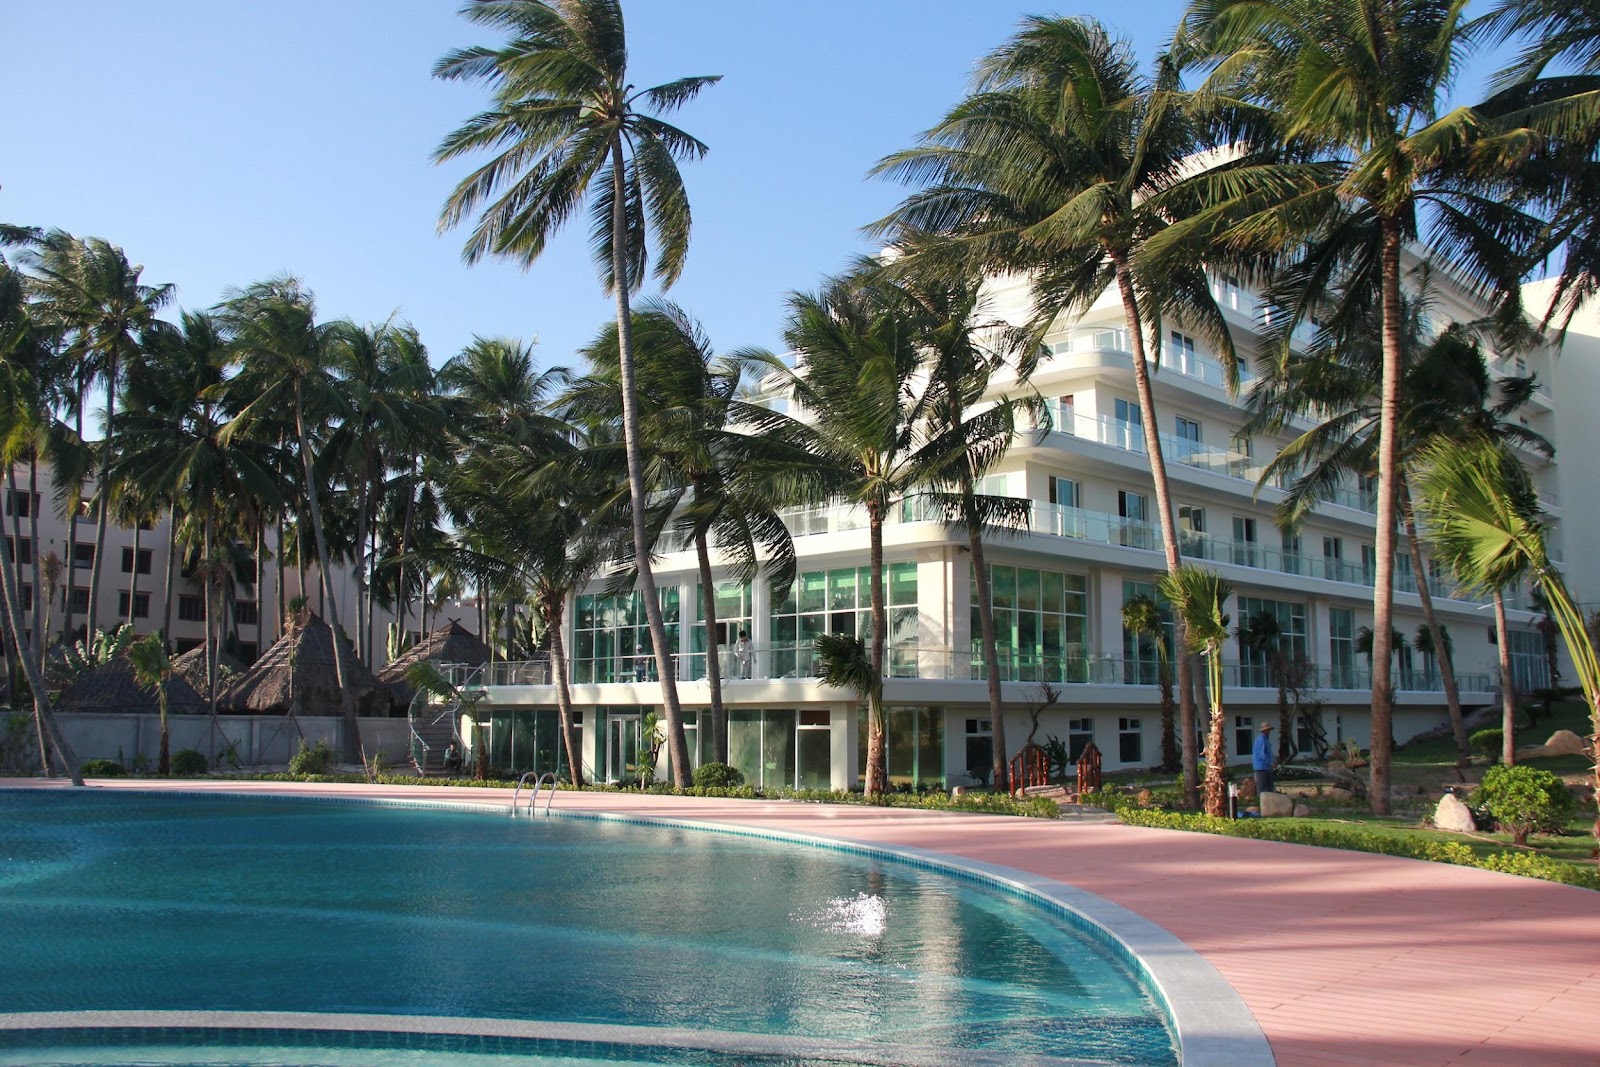 Khách sạn Mường Thanh Luxury Phú Quốc là câu trả lời cho băn khoăn đi Phú Quốc ở khách sạn nào tốt. (Nguồn: static.tapchitaichinh.vn)